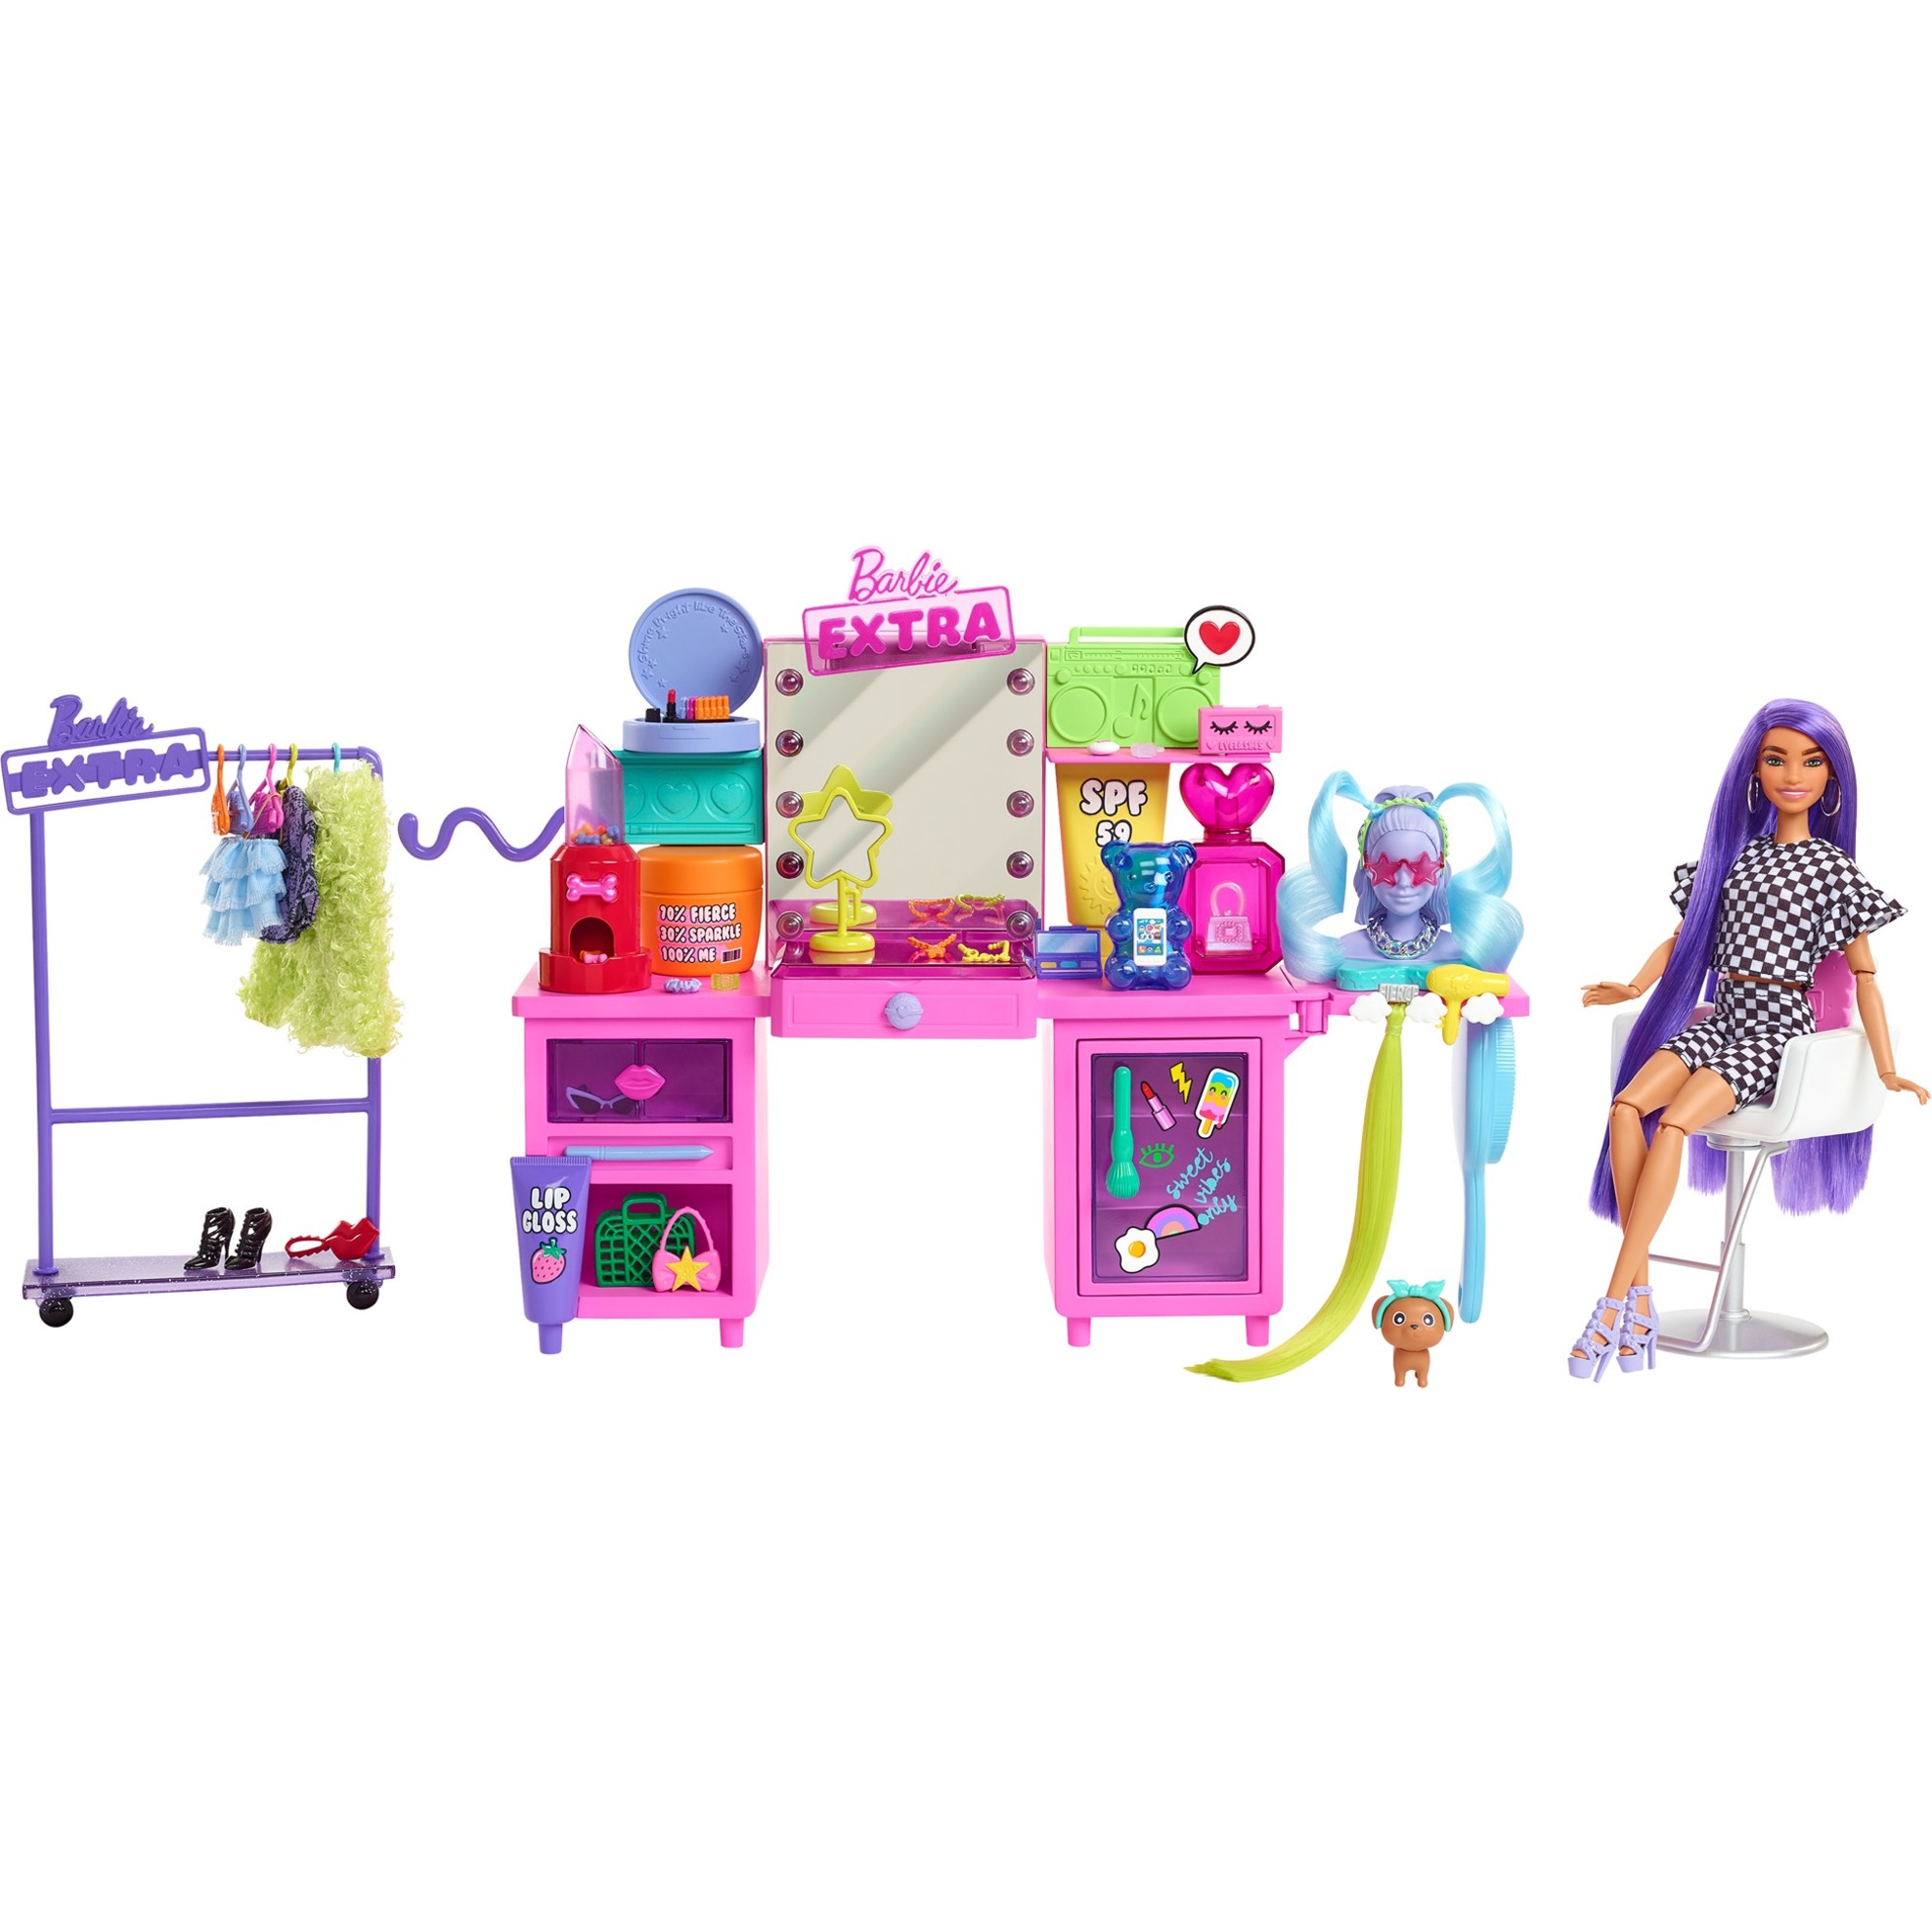 Image of Alternate - Barbie Extra Spielset mit Puppe und Stylingtisch online einkaufen bei Alternate